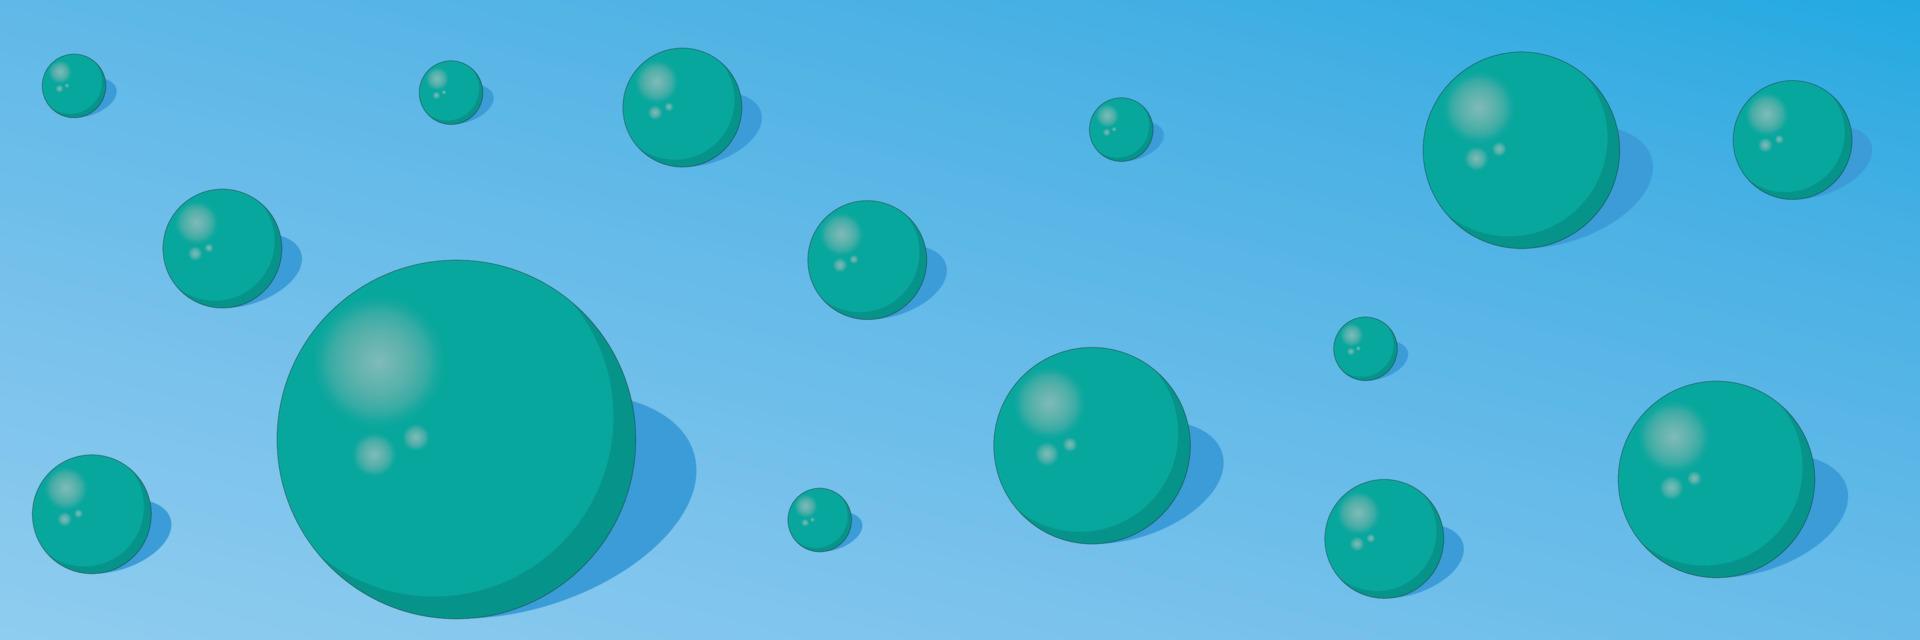 sfondo astratto con palline turchesi su sfondo di colore blu illustrazione vettoriale